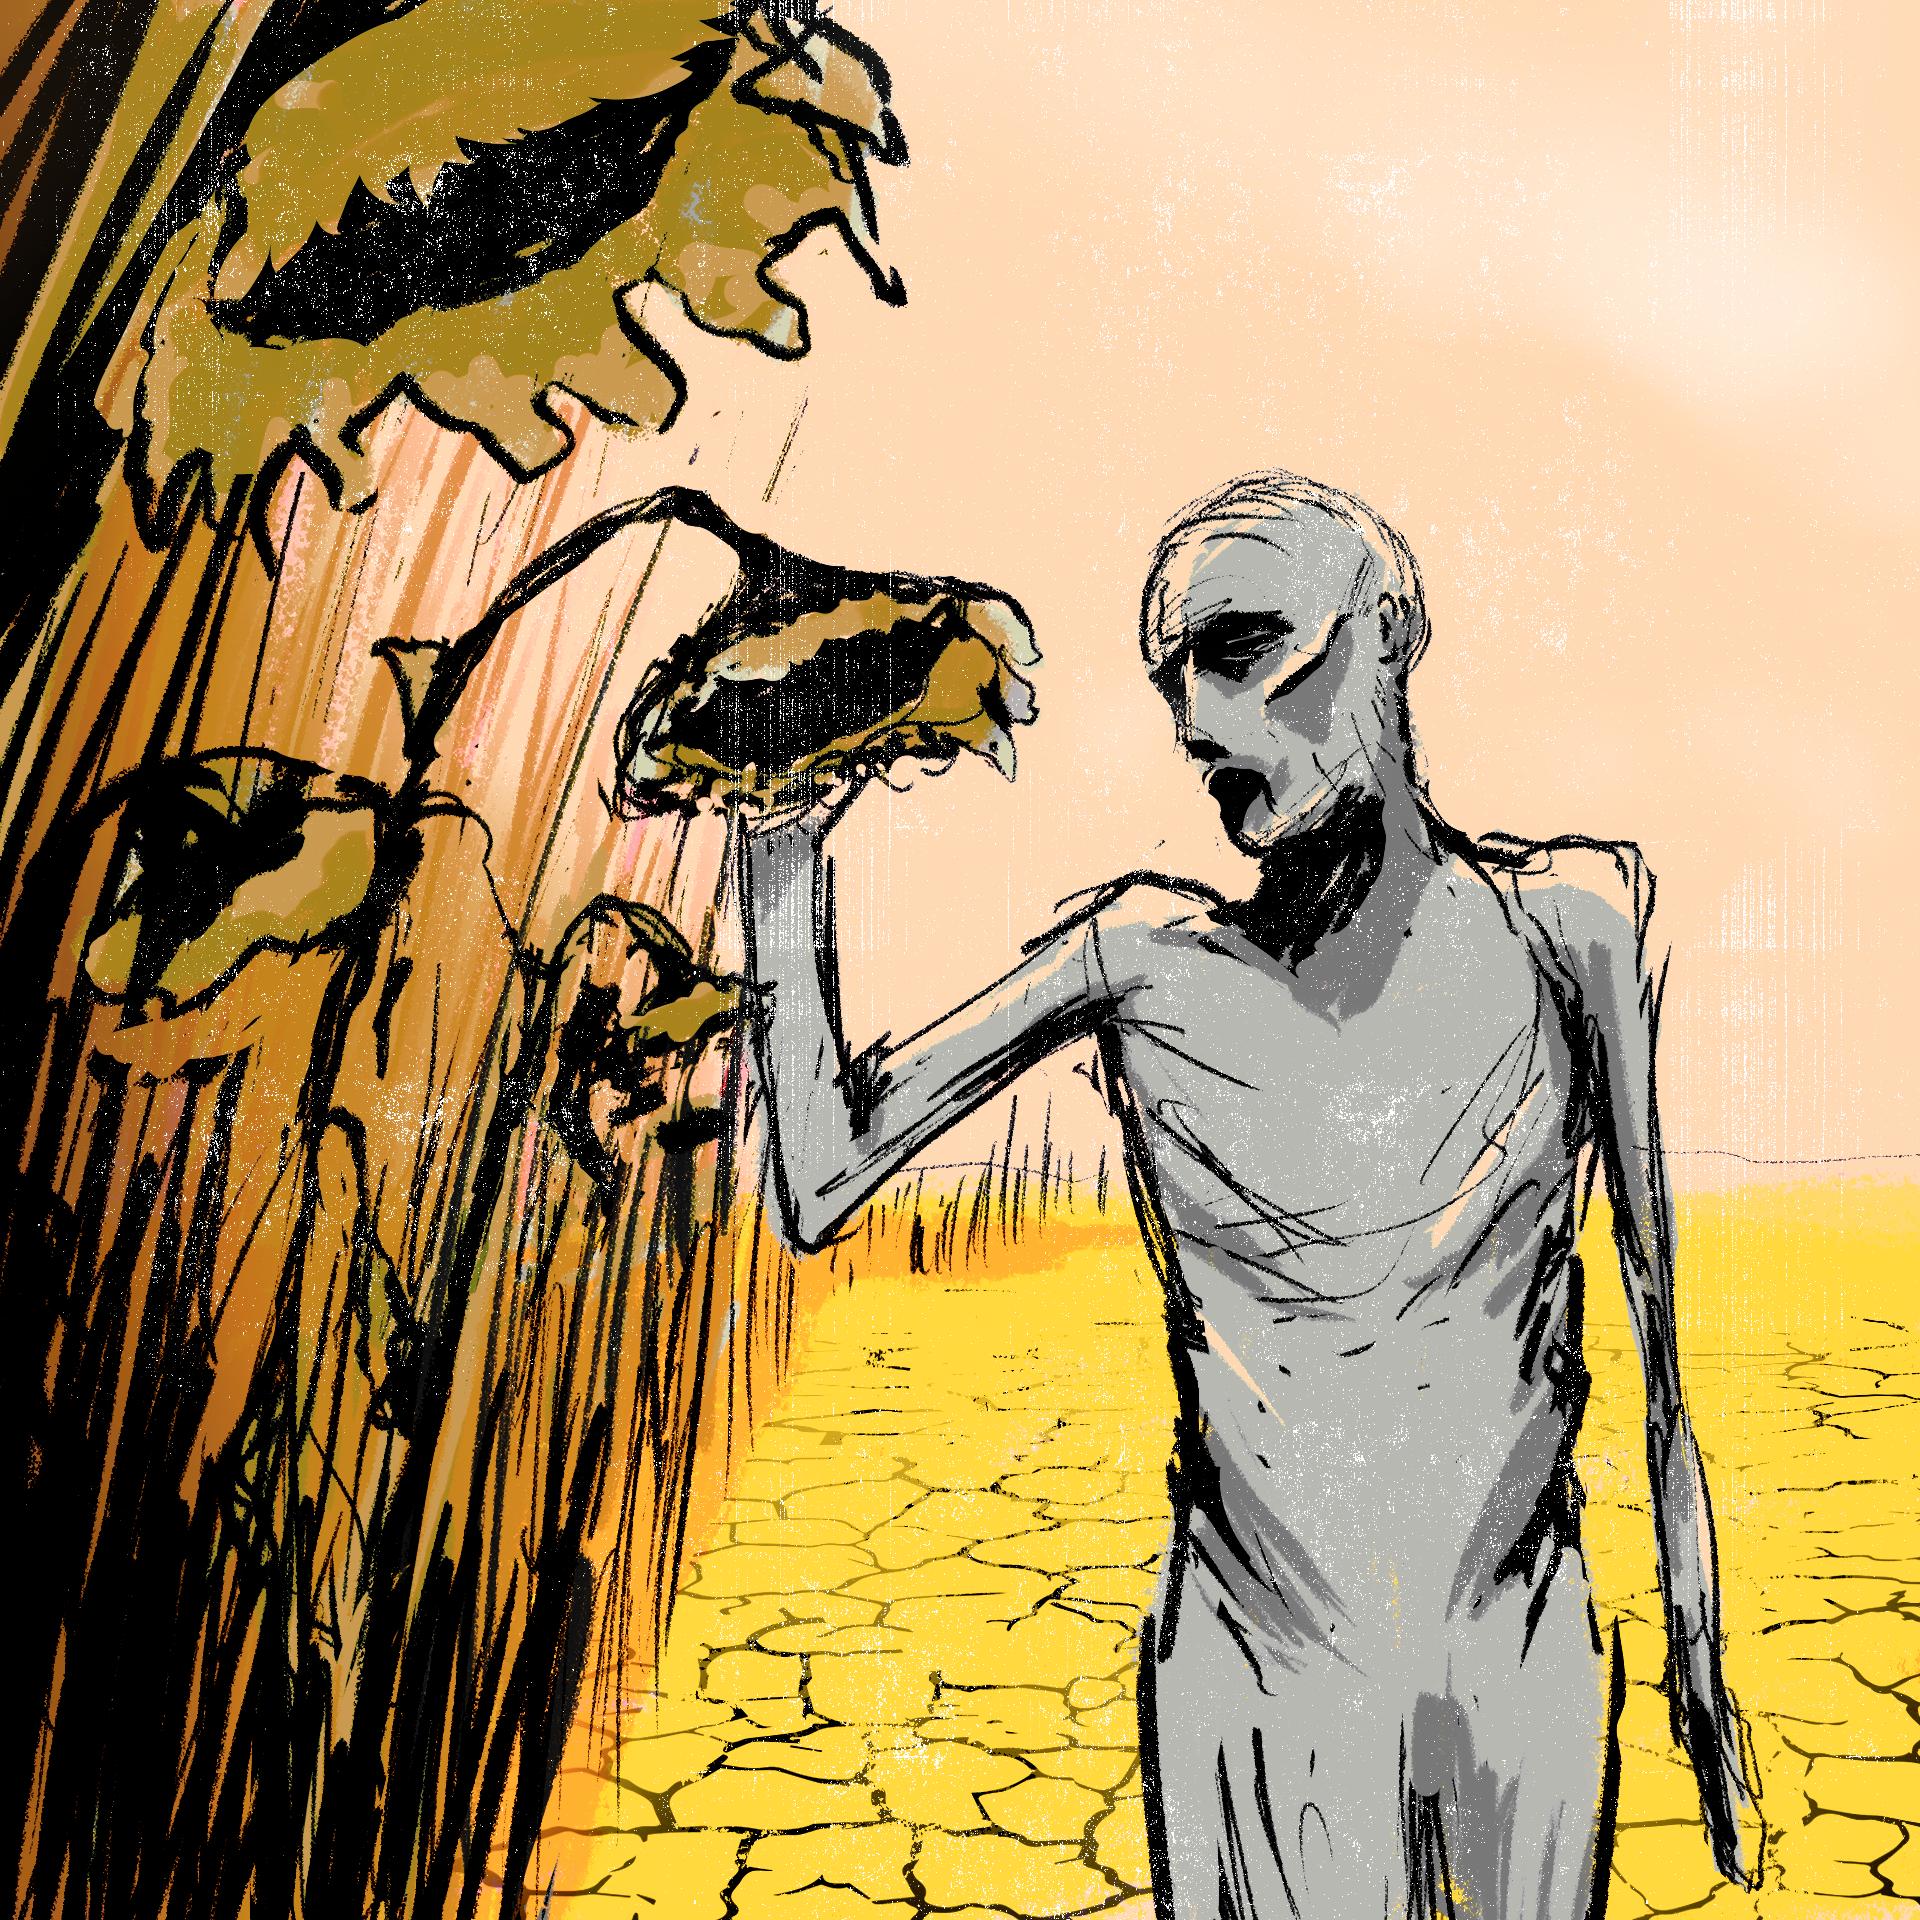 Rysunek, postać ludzka, wqychudzona na tle wyschnętego pola i uschniętego słonecznika